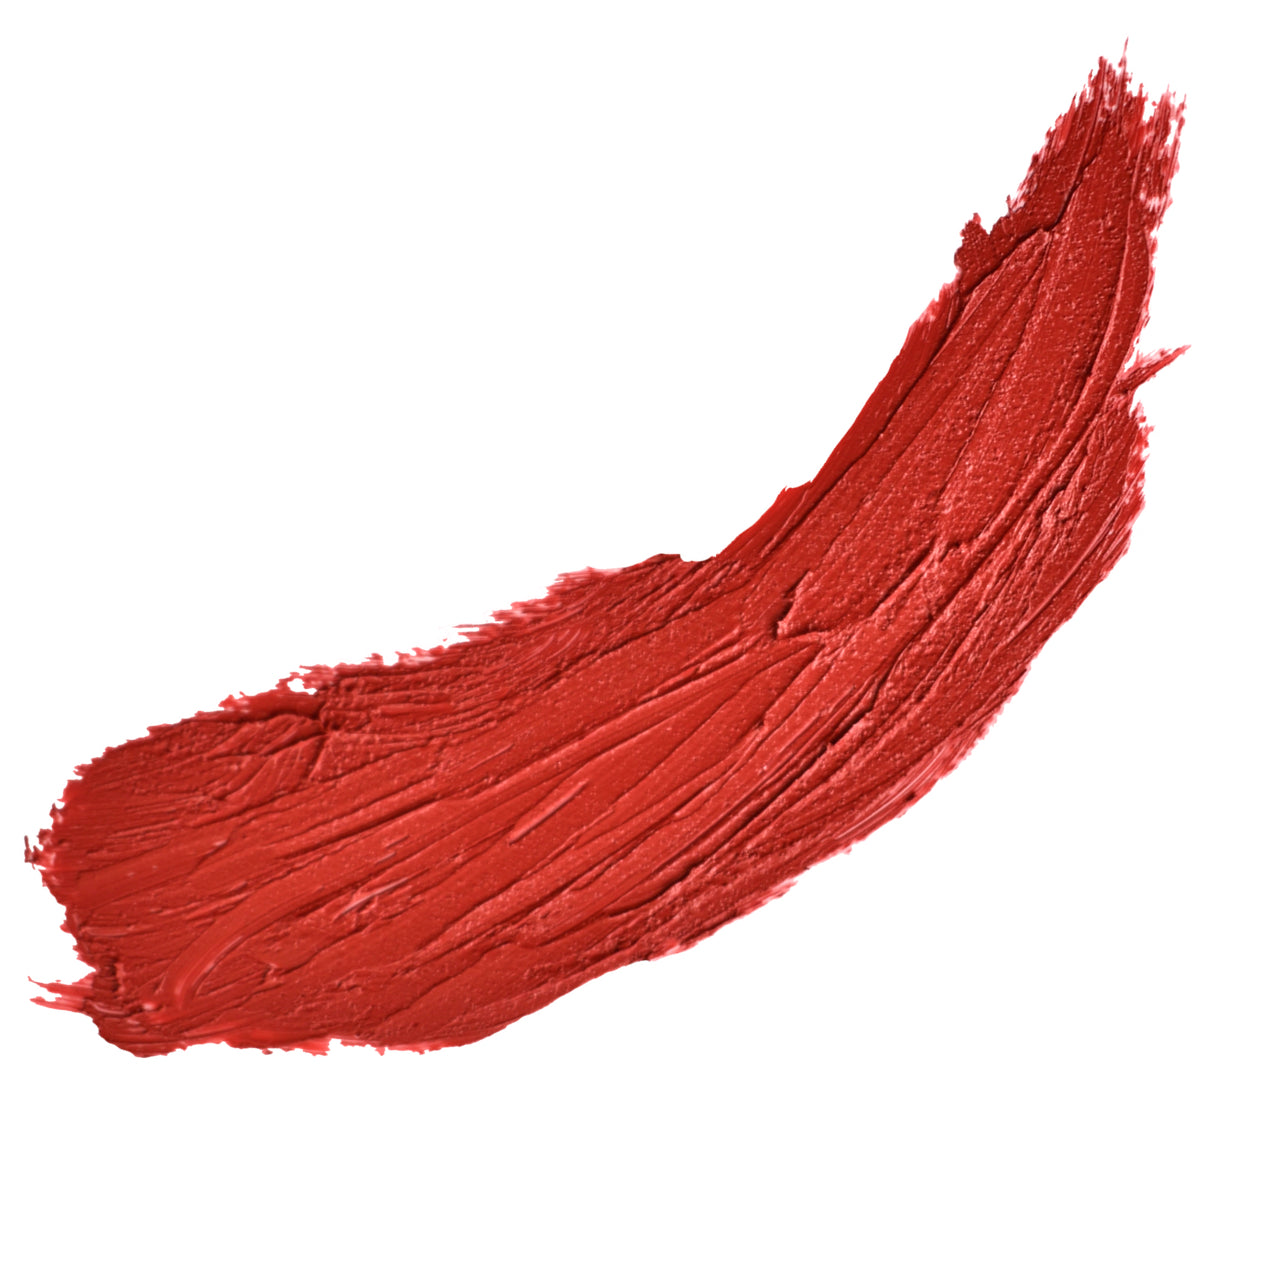 Brick Red Orange Based Lipstick